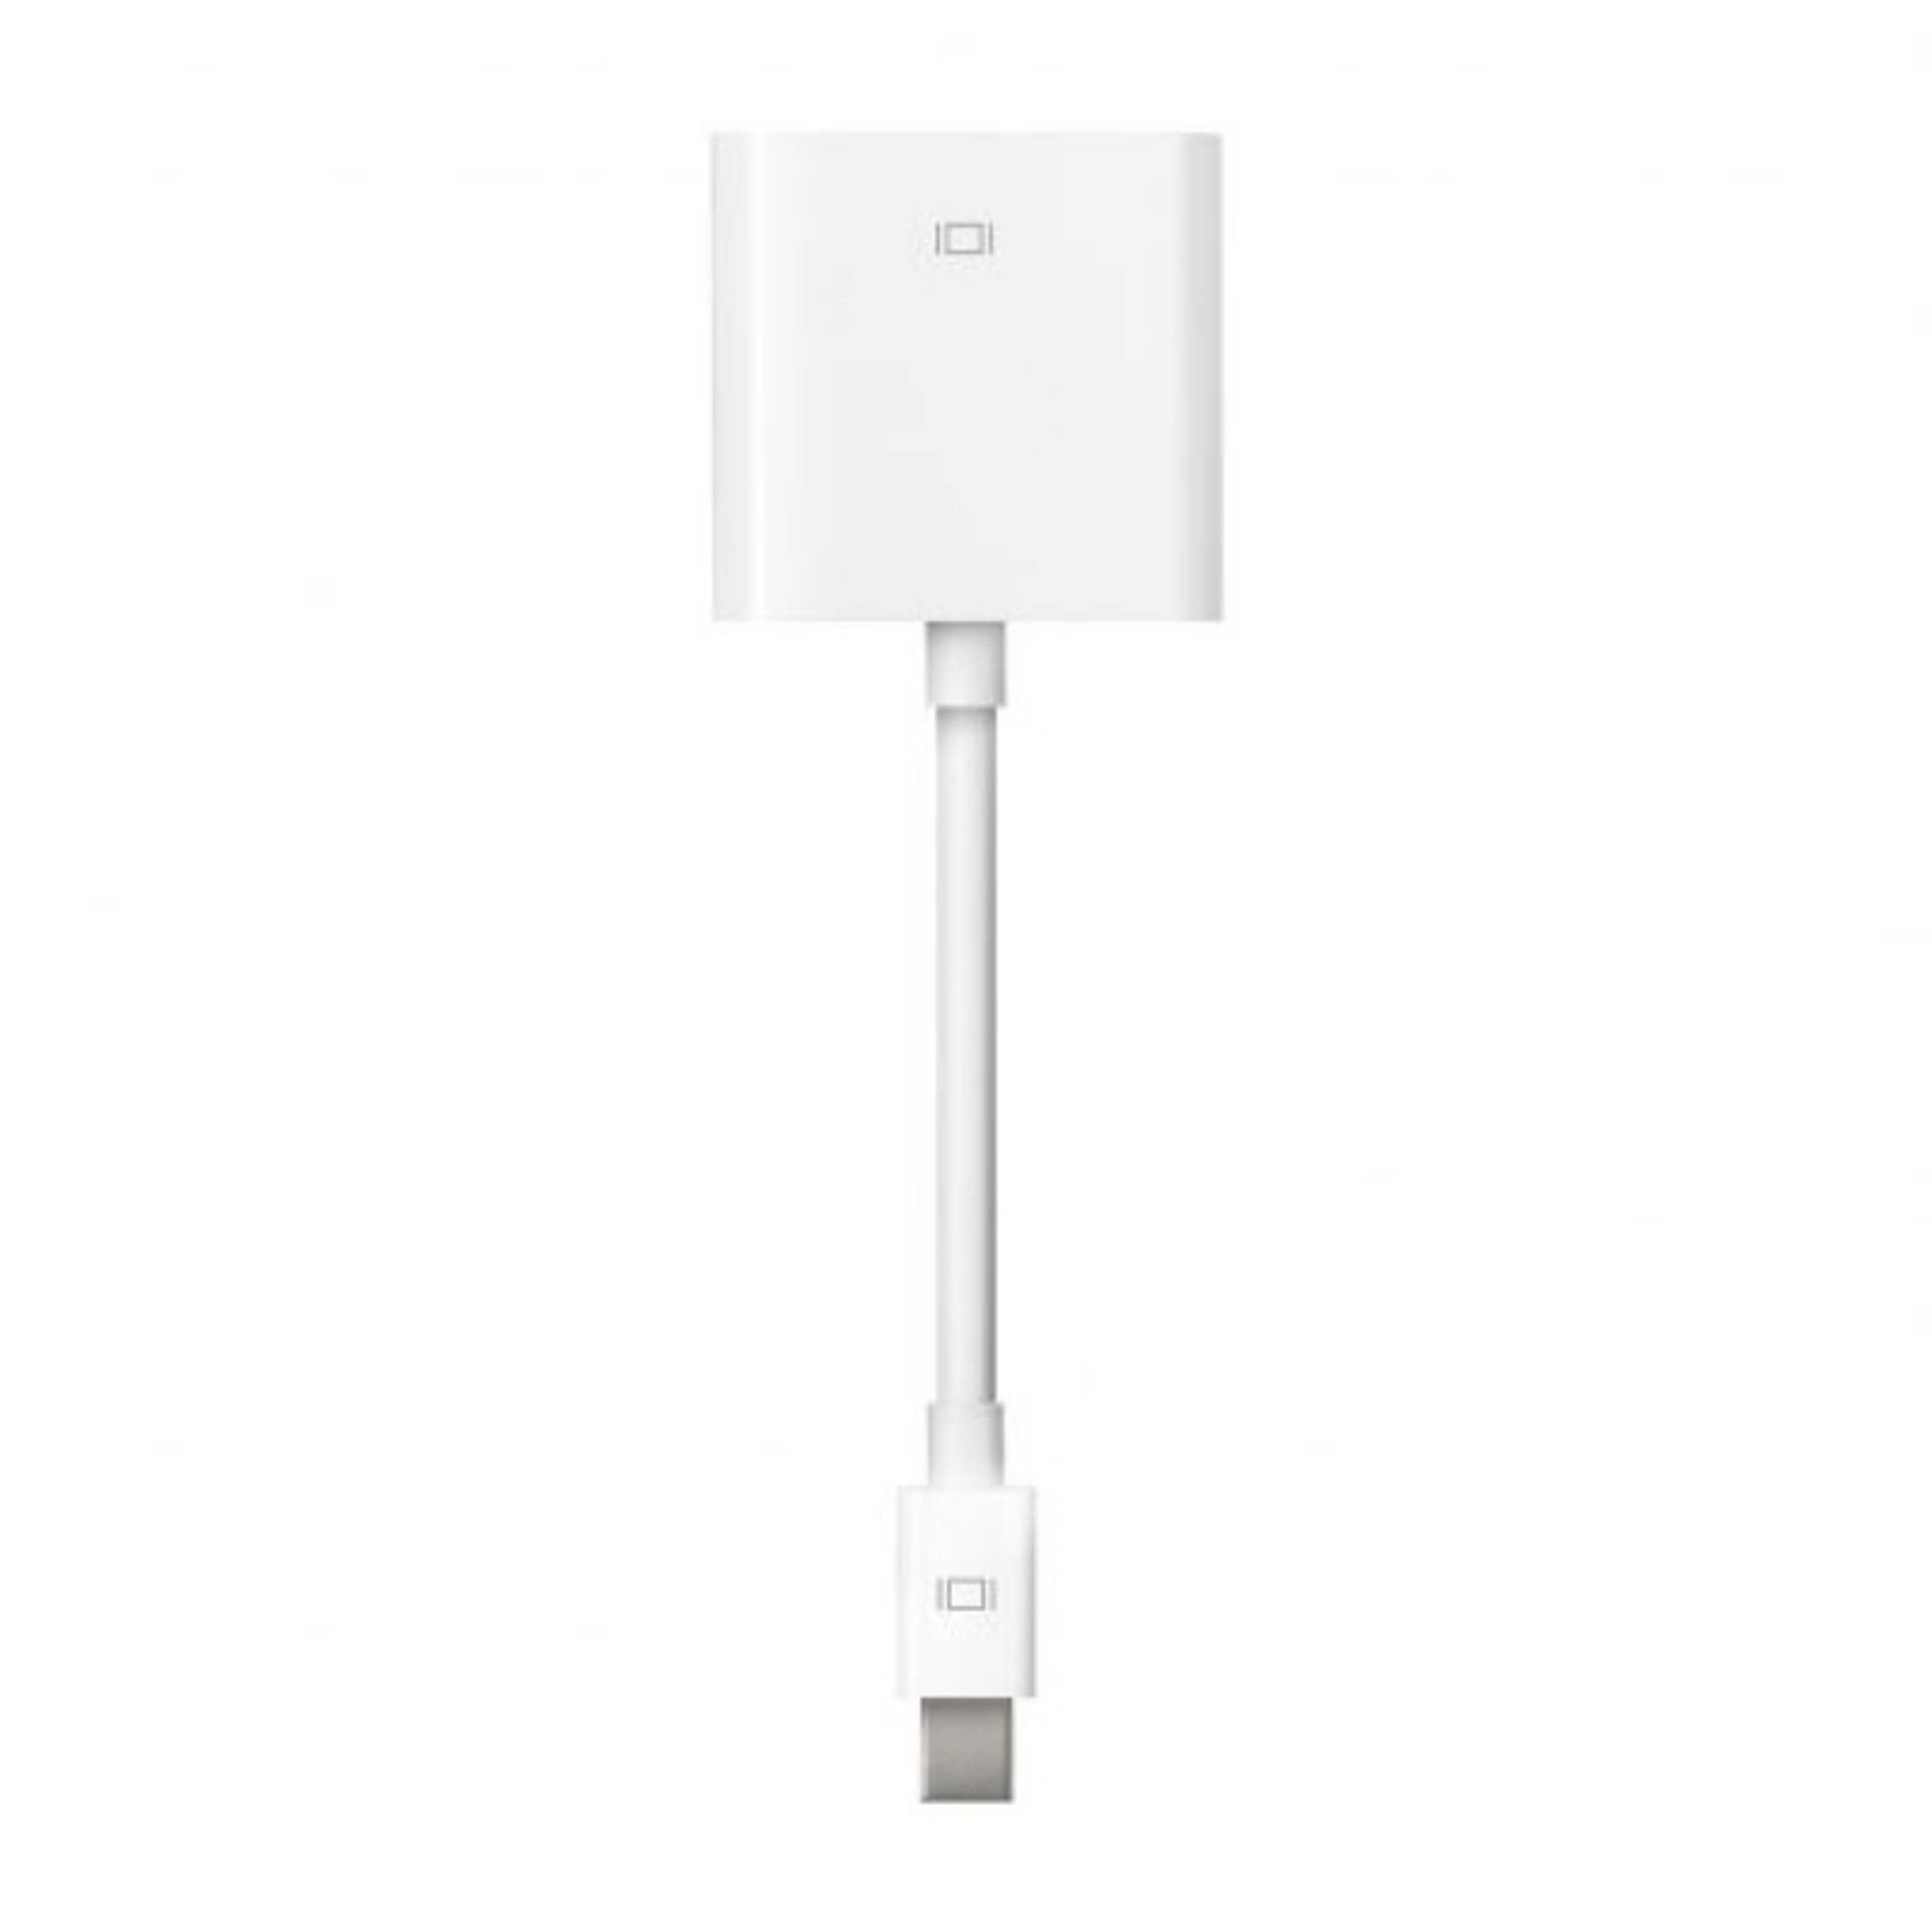 Apple Mini DisplayPort to DVI Adapter – MB570LLB